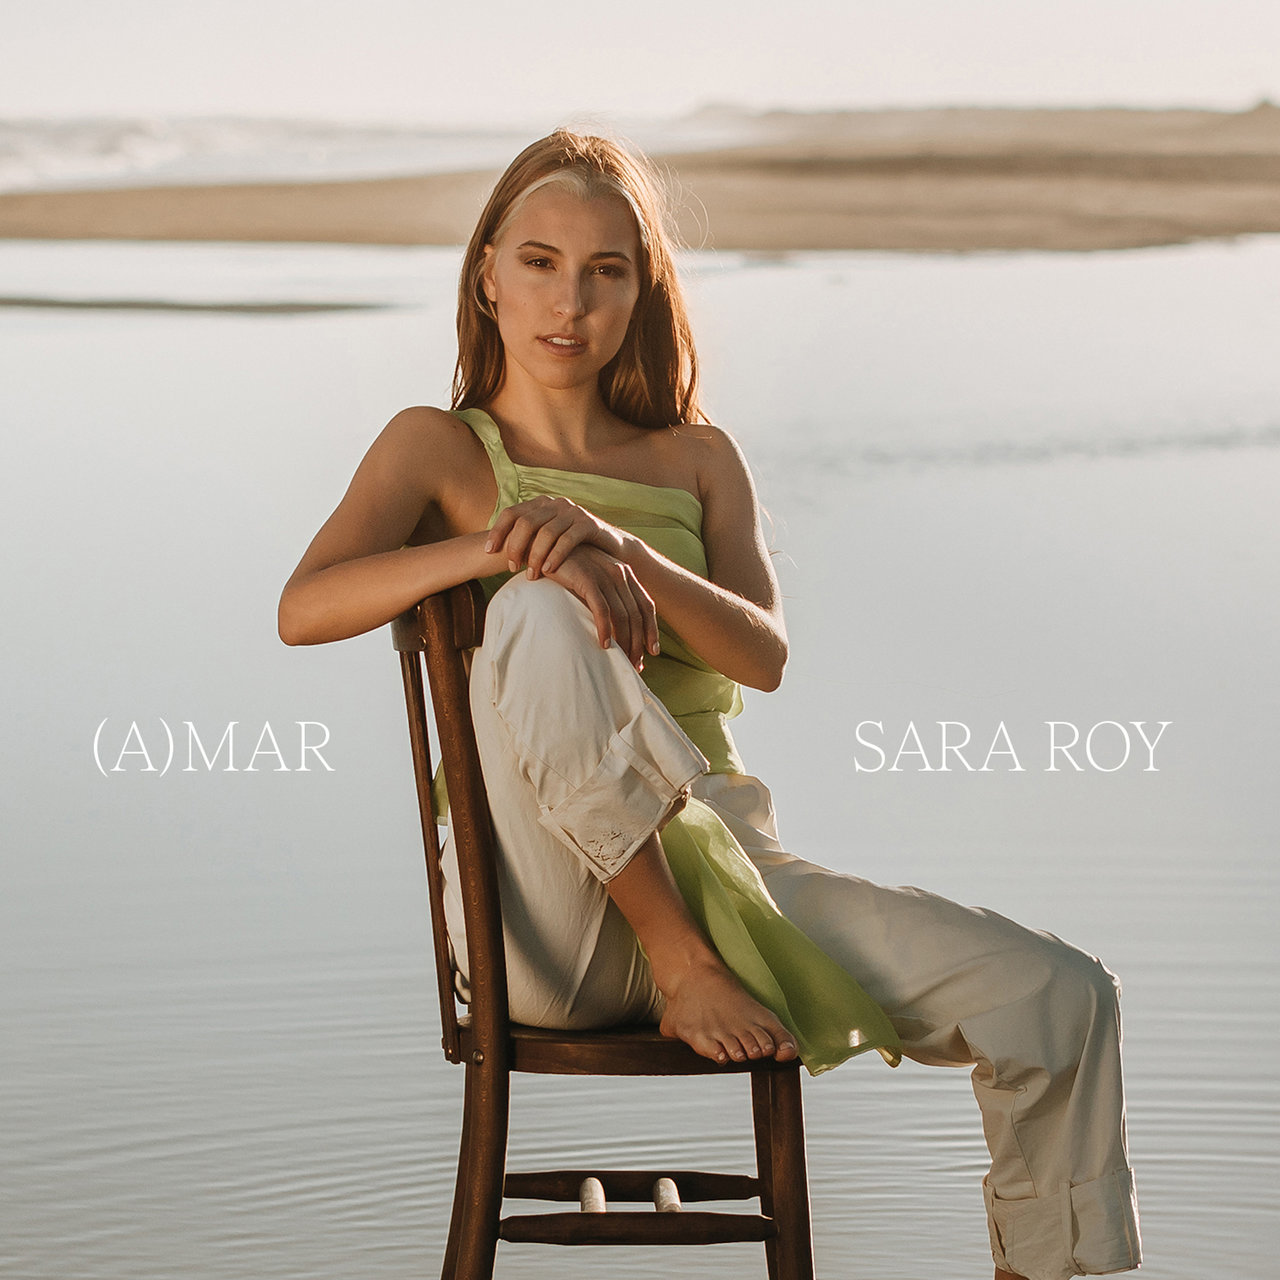 Sara Roy (A)MAR cover artwork